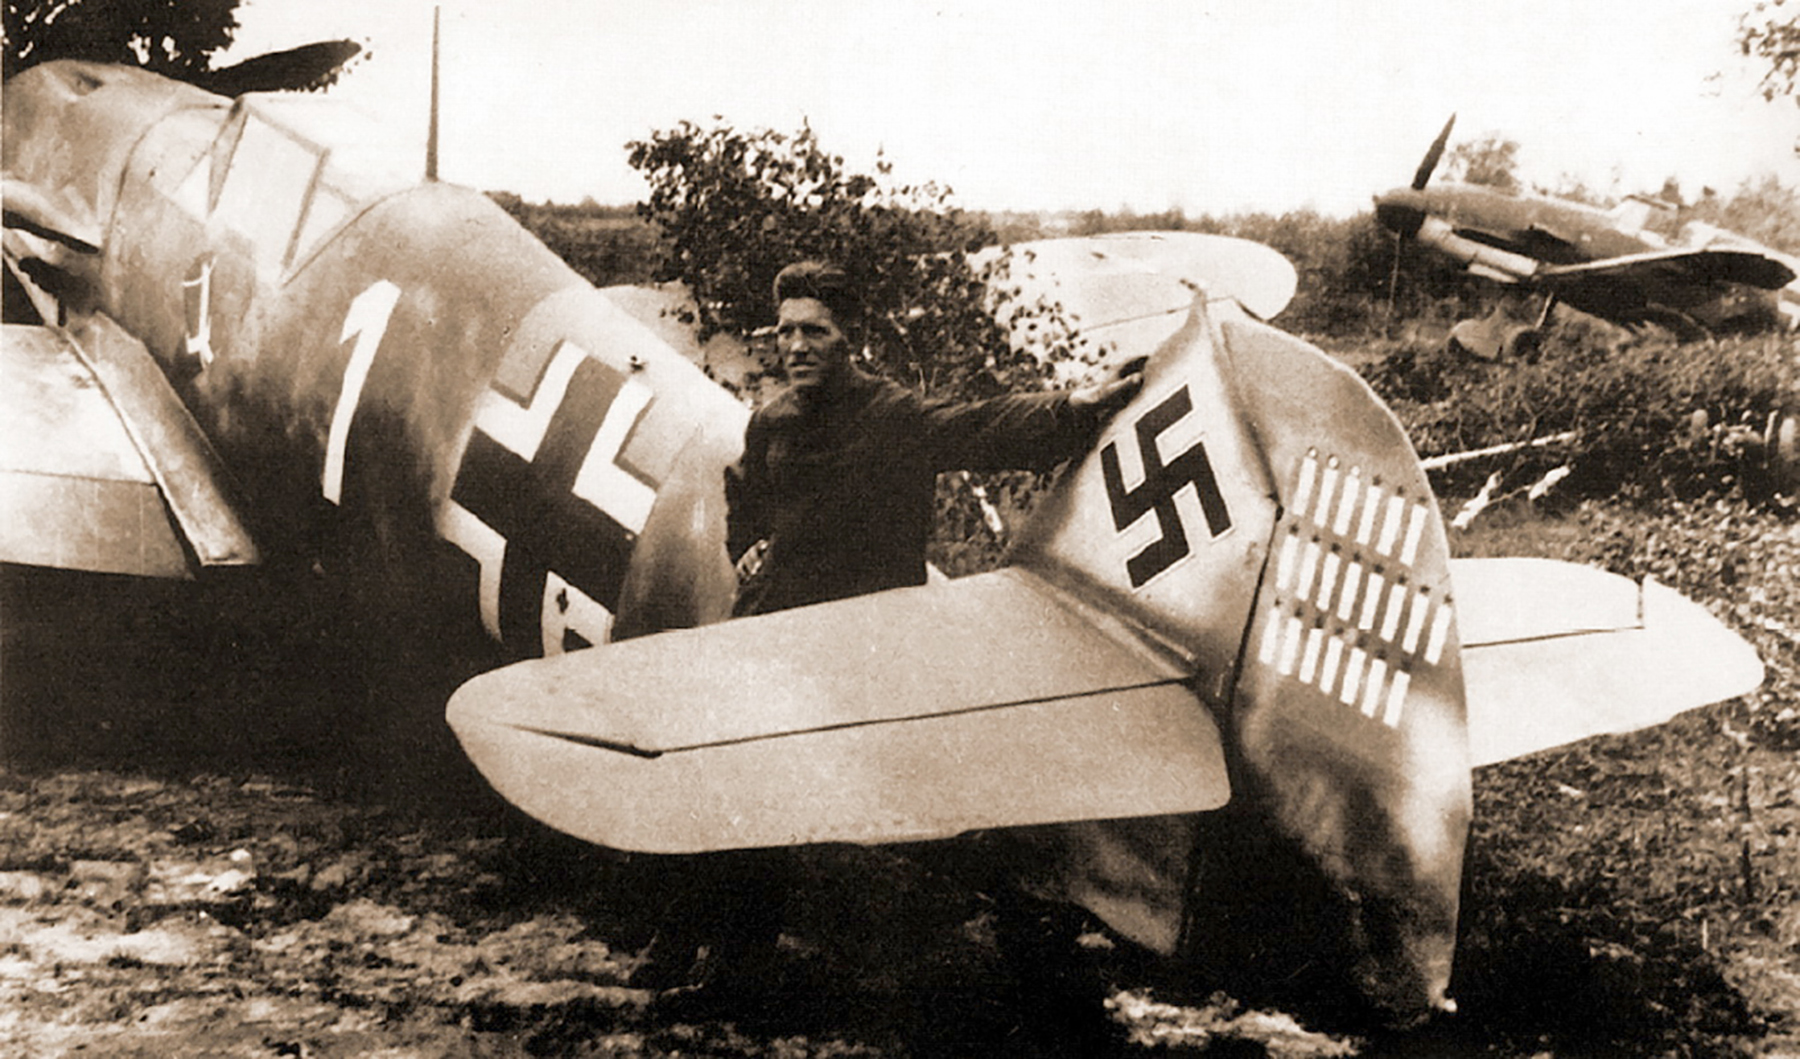 Messerschmitt Bf 109F2 1.JG54 White 1 Reinhard Seiler Russia 22nd Jun 1941 01